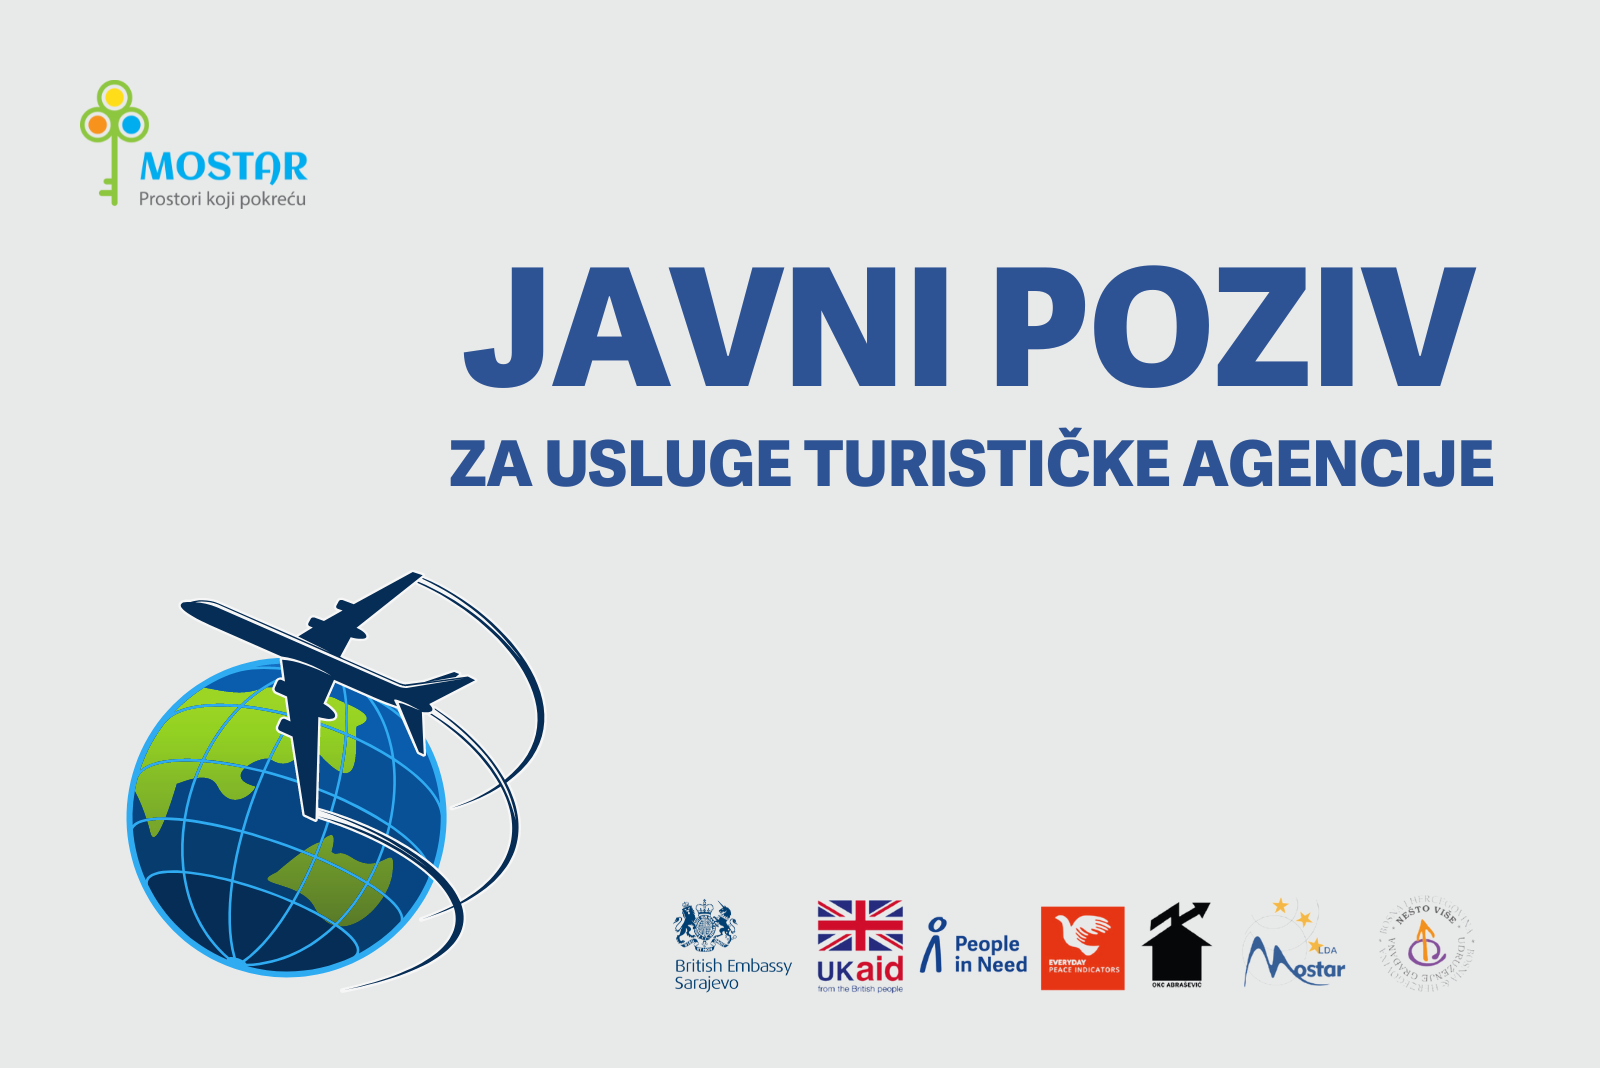 People in Need traži usluge turističke agencije za organizaciju medijskih posjeta u okviru Projekta Mostar